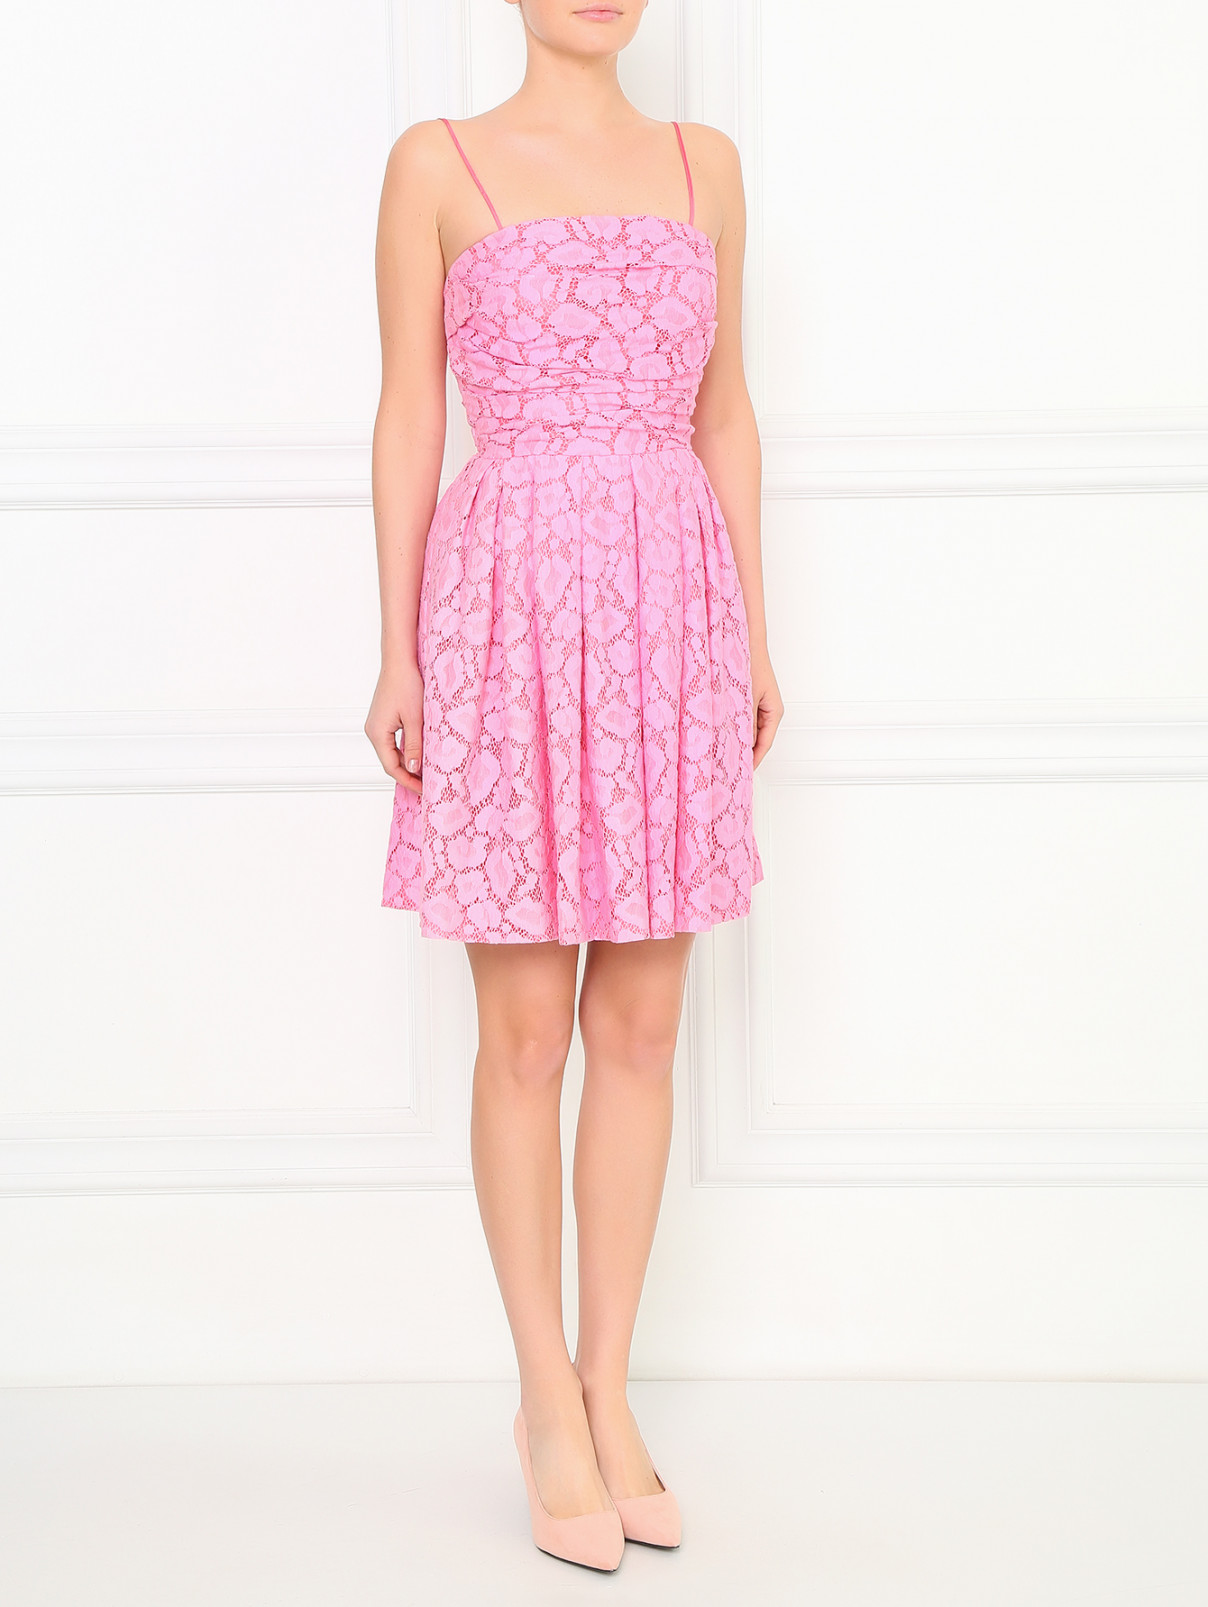 Платье-мини из кружева на съемных бретелях Moschino Cheap&Chic  –  Модель Общий вид  – Цвет:  Розовый